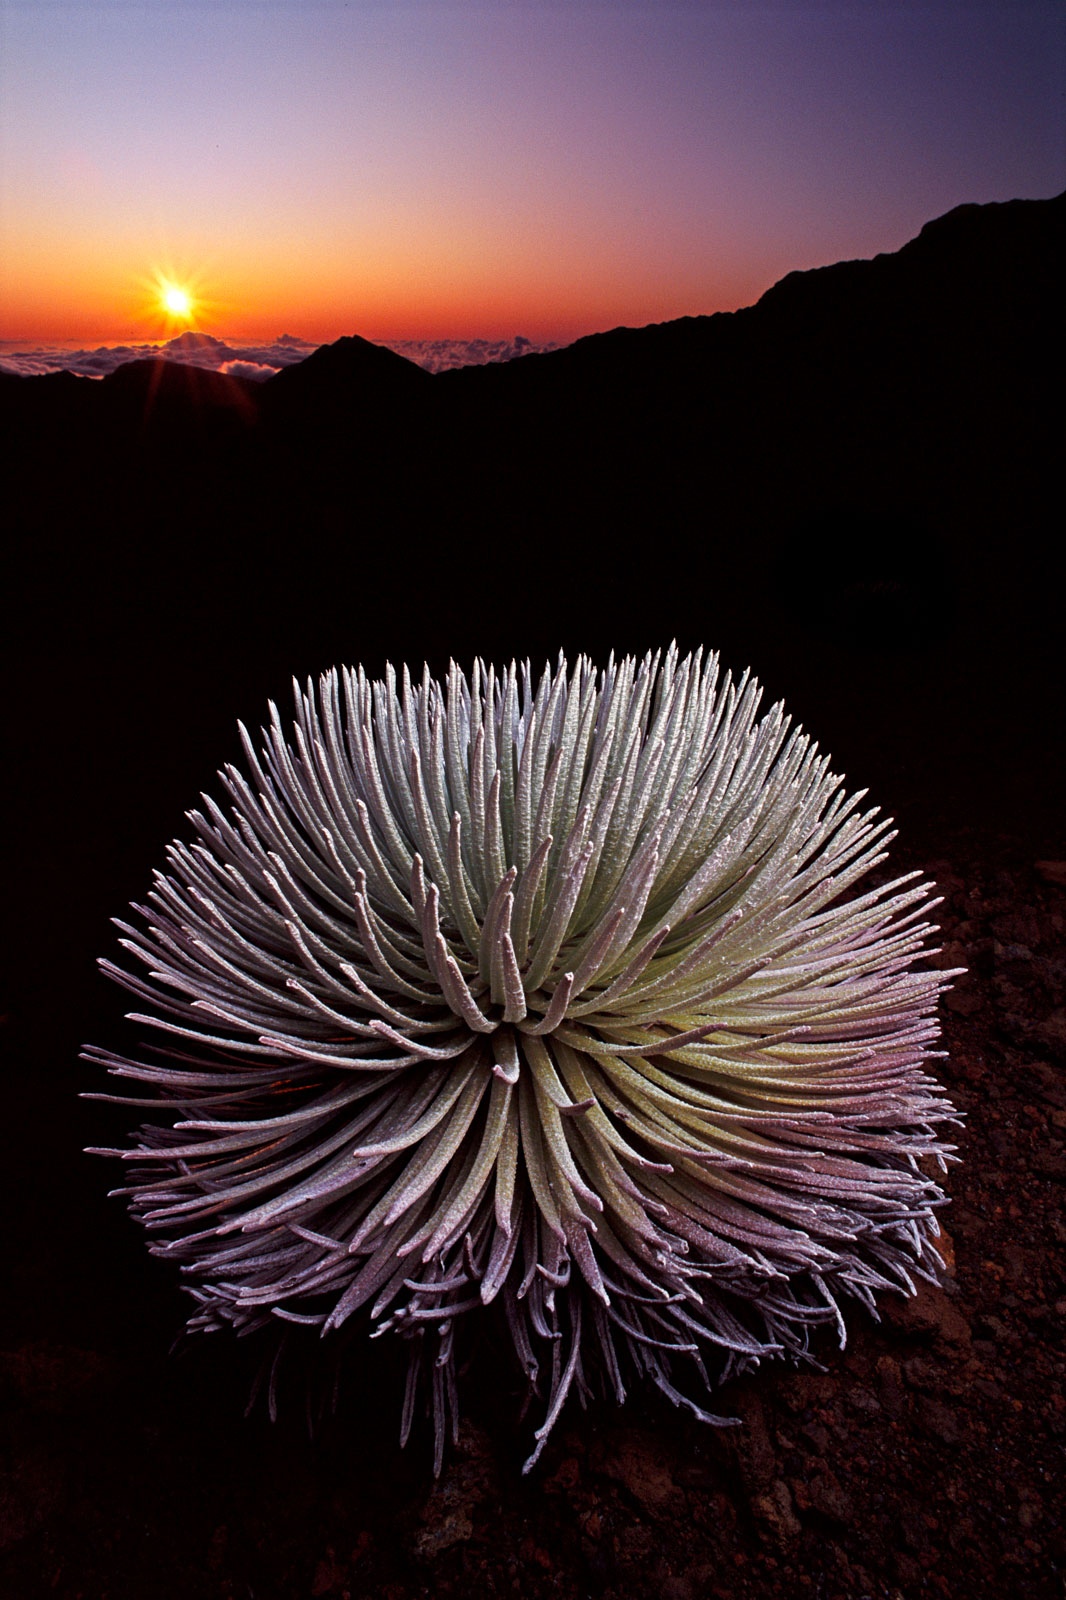 Silversword at sunset, Mauna Kea, Hawaii, USA